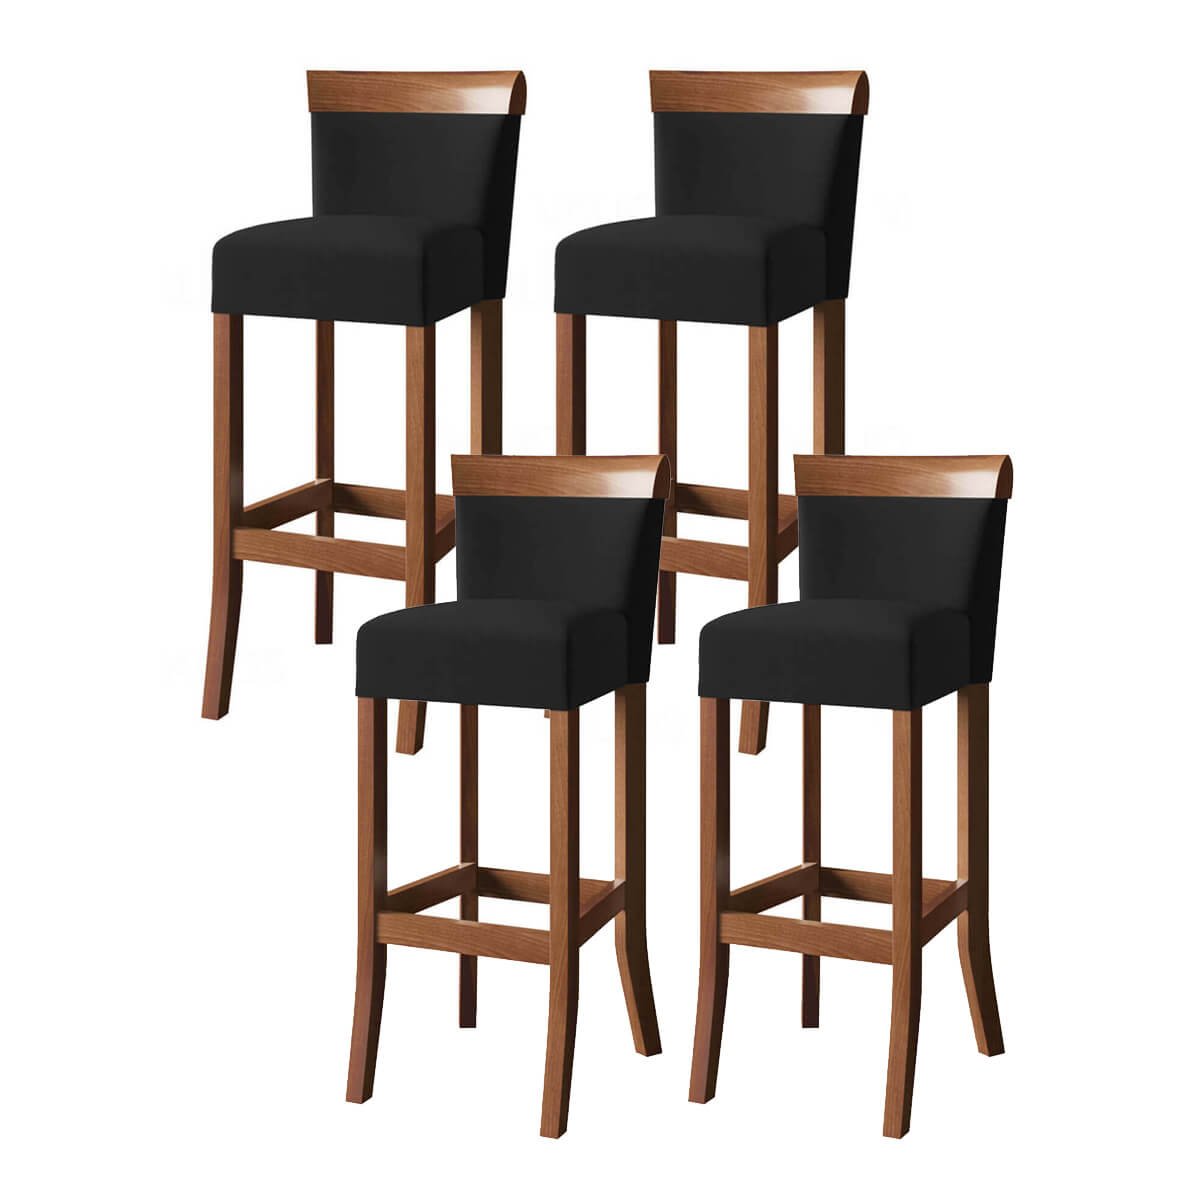 Jogo com 4 cadeira para bancada banco alto de madeira bar cozinha americana encosto estofado Valios - 1